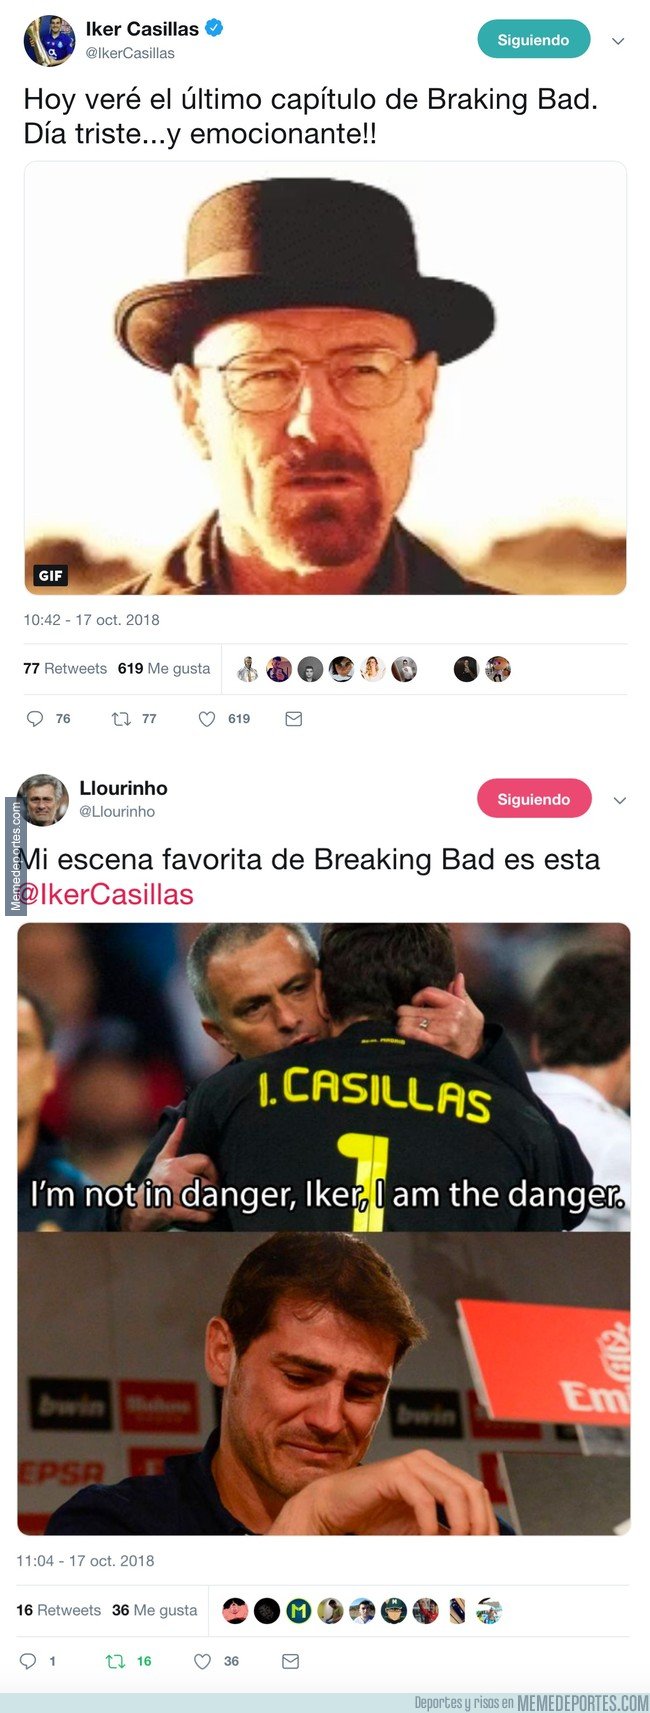 1053421 - @Llourinho destroza a Casillas con esta sublime respuesta tras decir que hoy acaba Breaking Bad